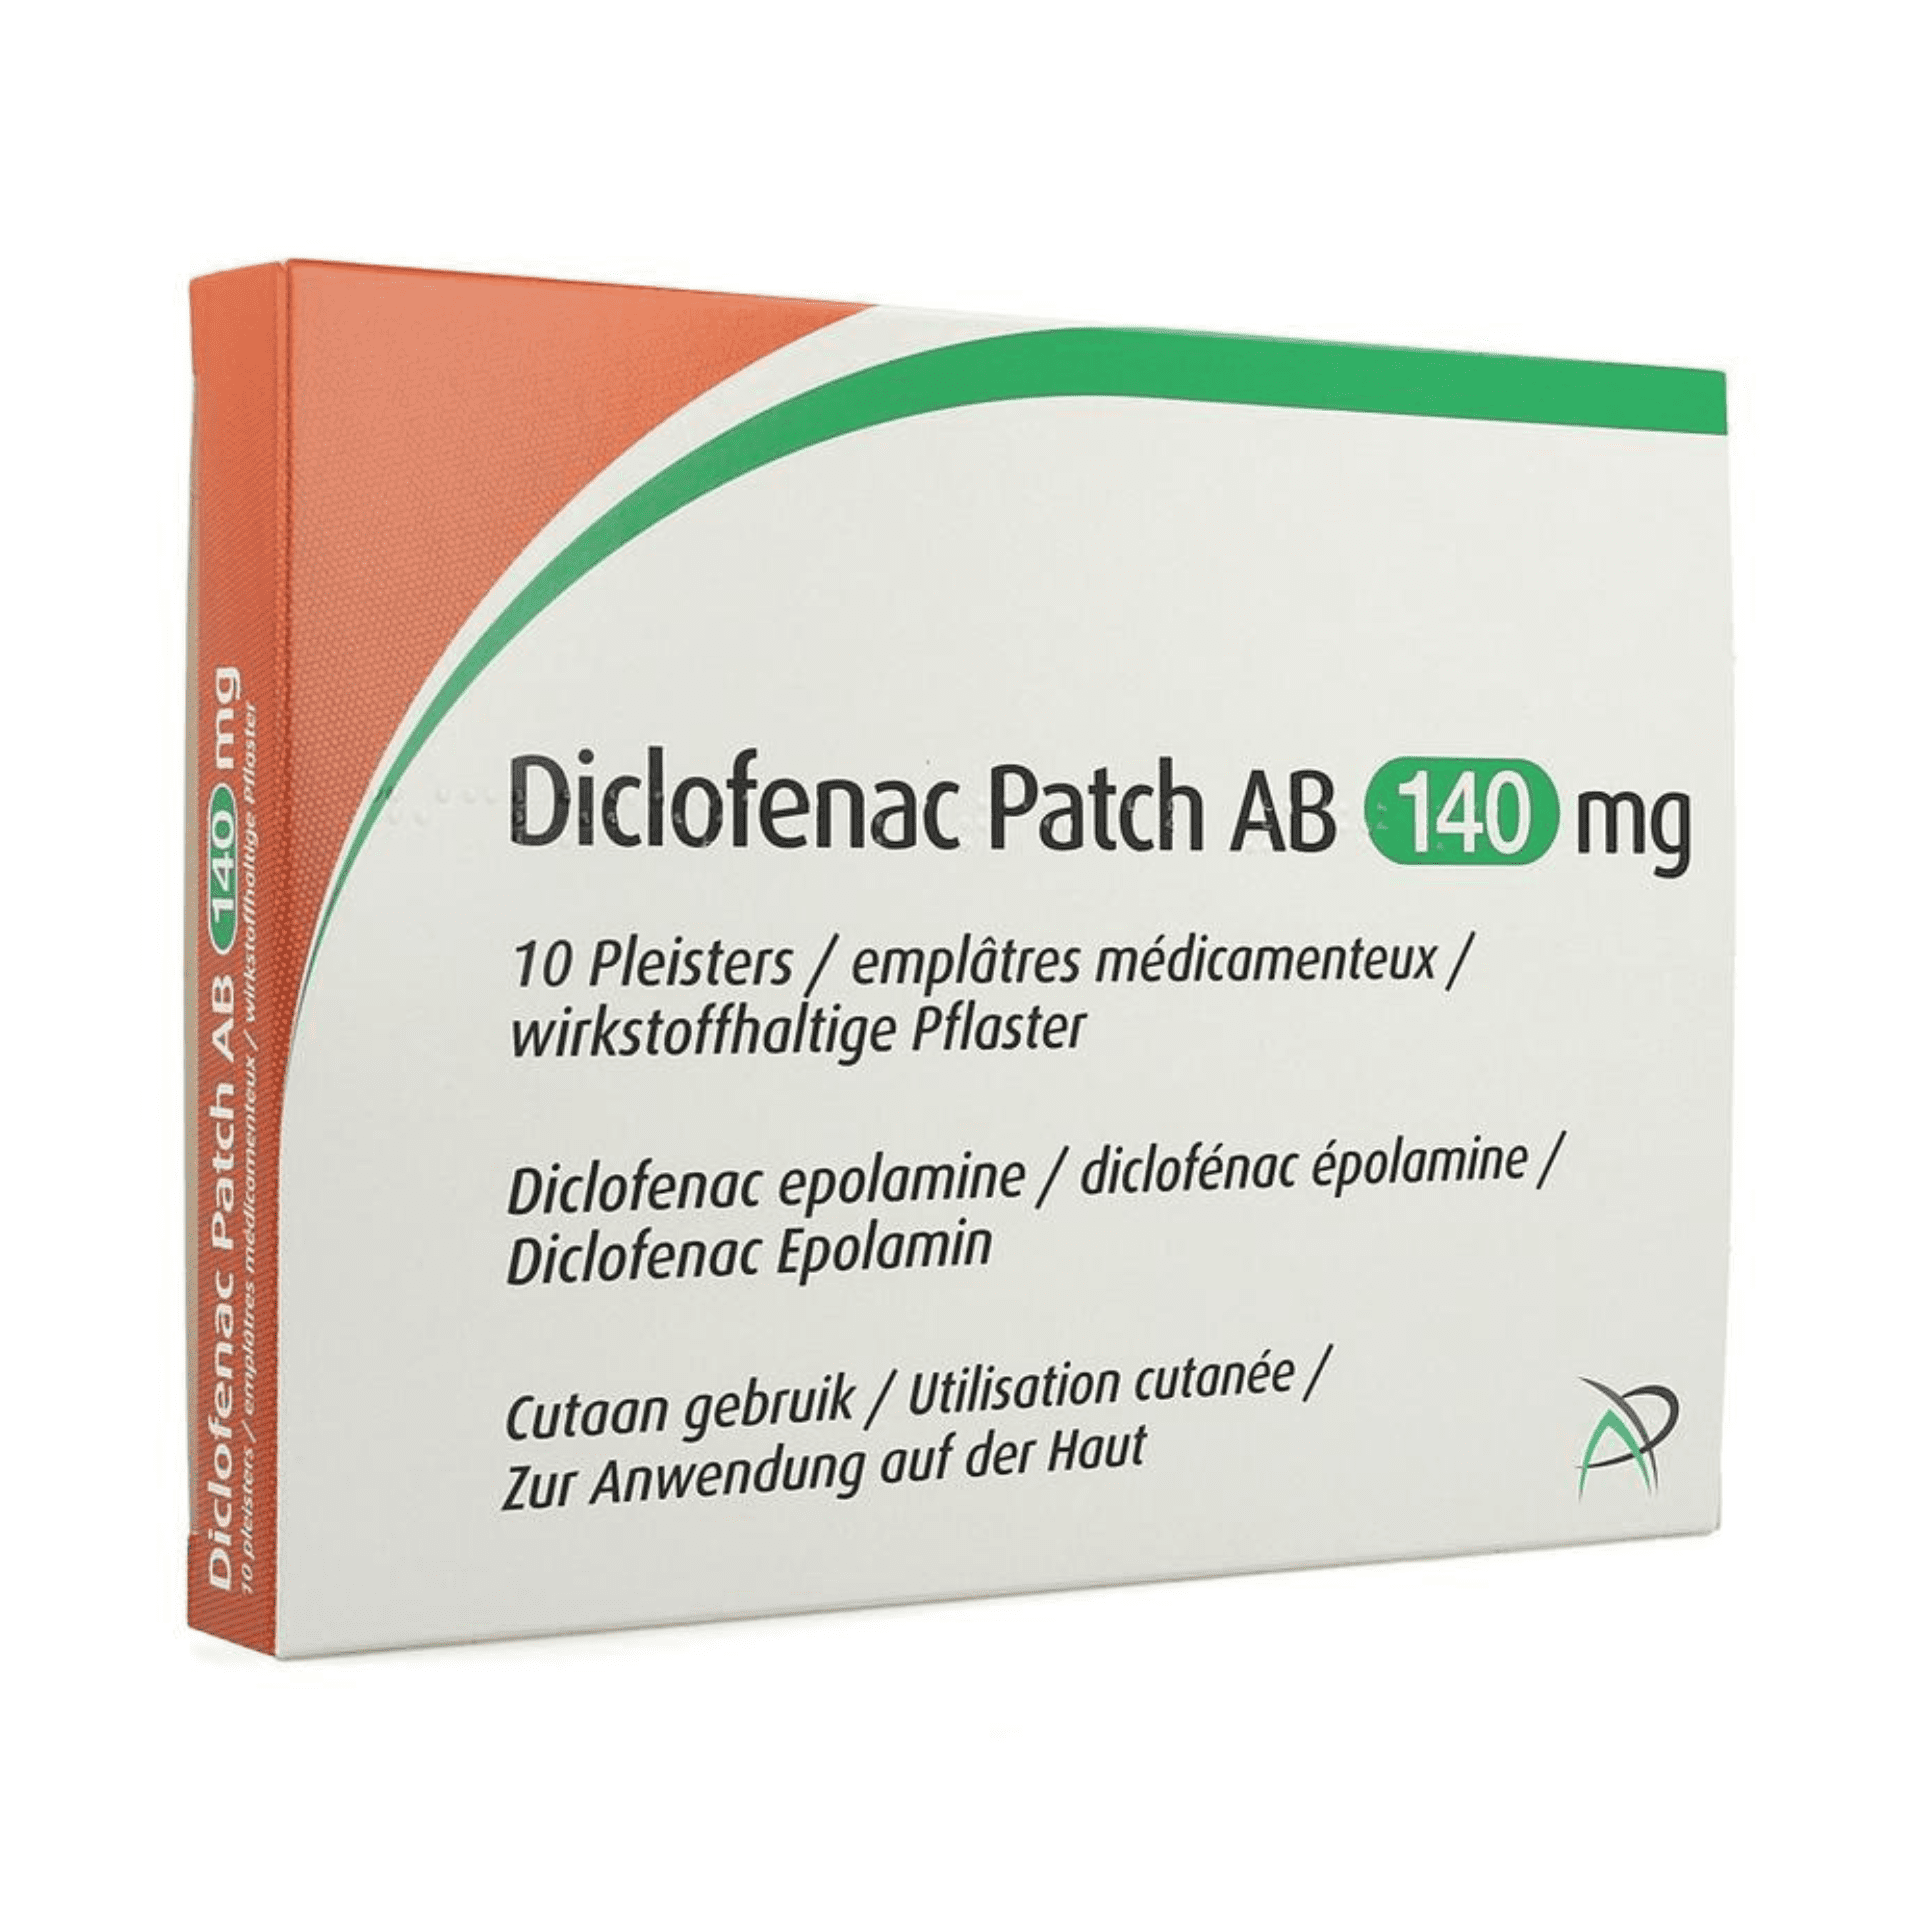 Diclofenac Patch AB 140 mg Pleister 